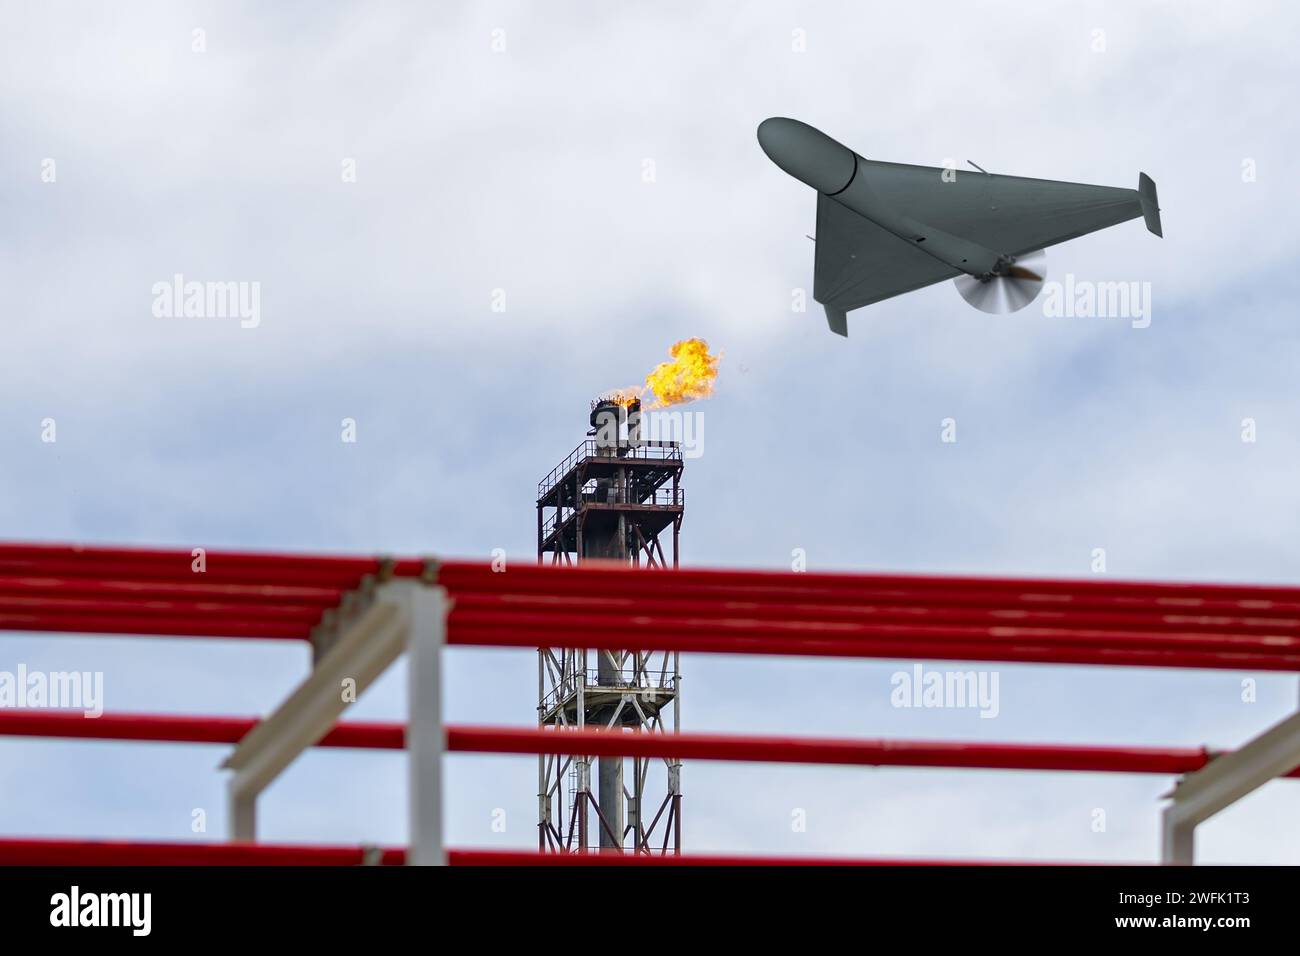 Un drone militaire survole une raffinerie de pétrole, brûlant du feu. Banque D'Images